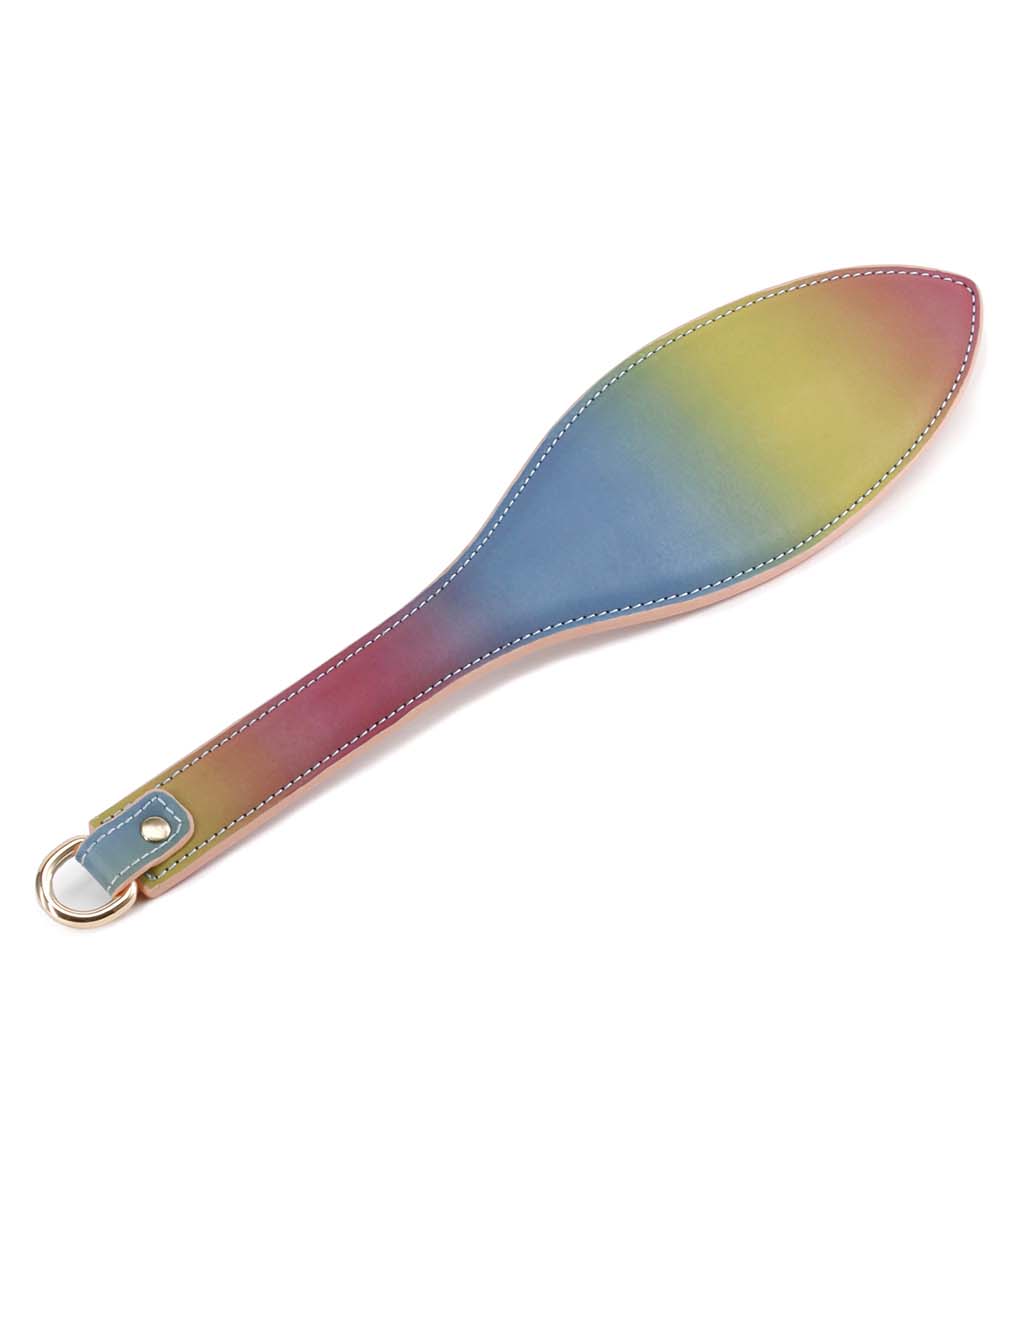 Spectra Bondage Paddle- main